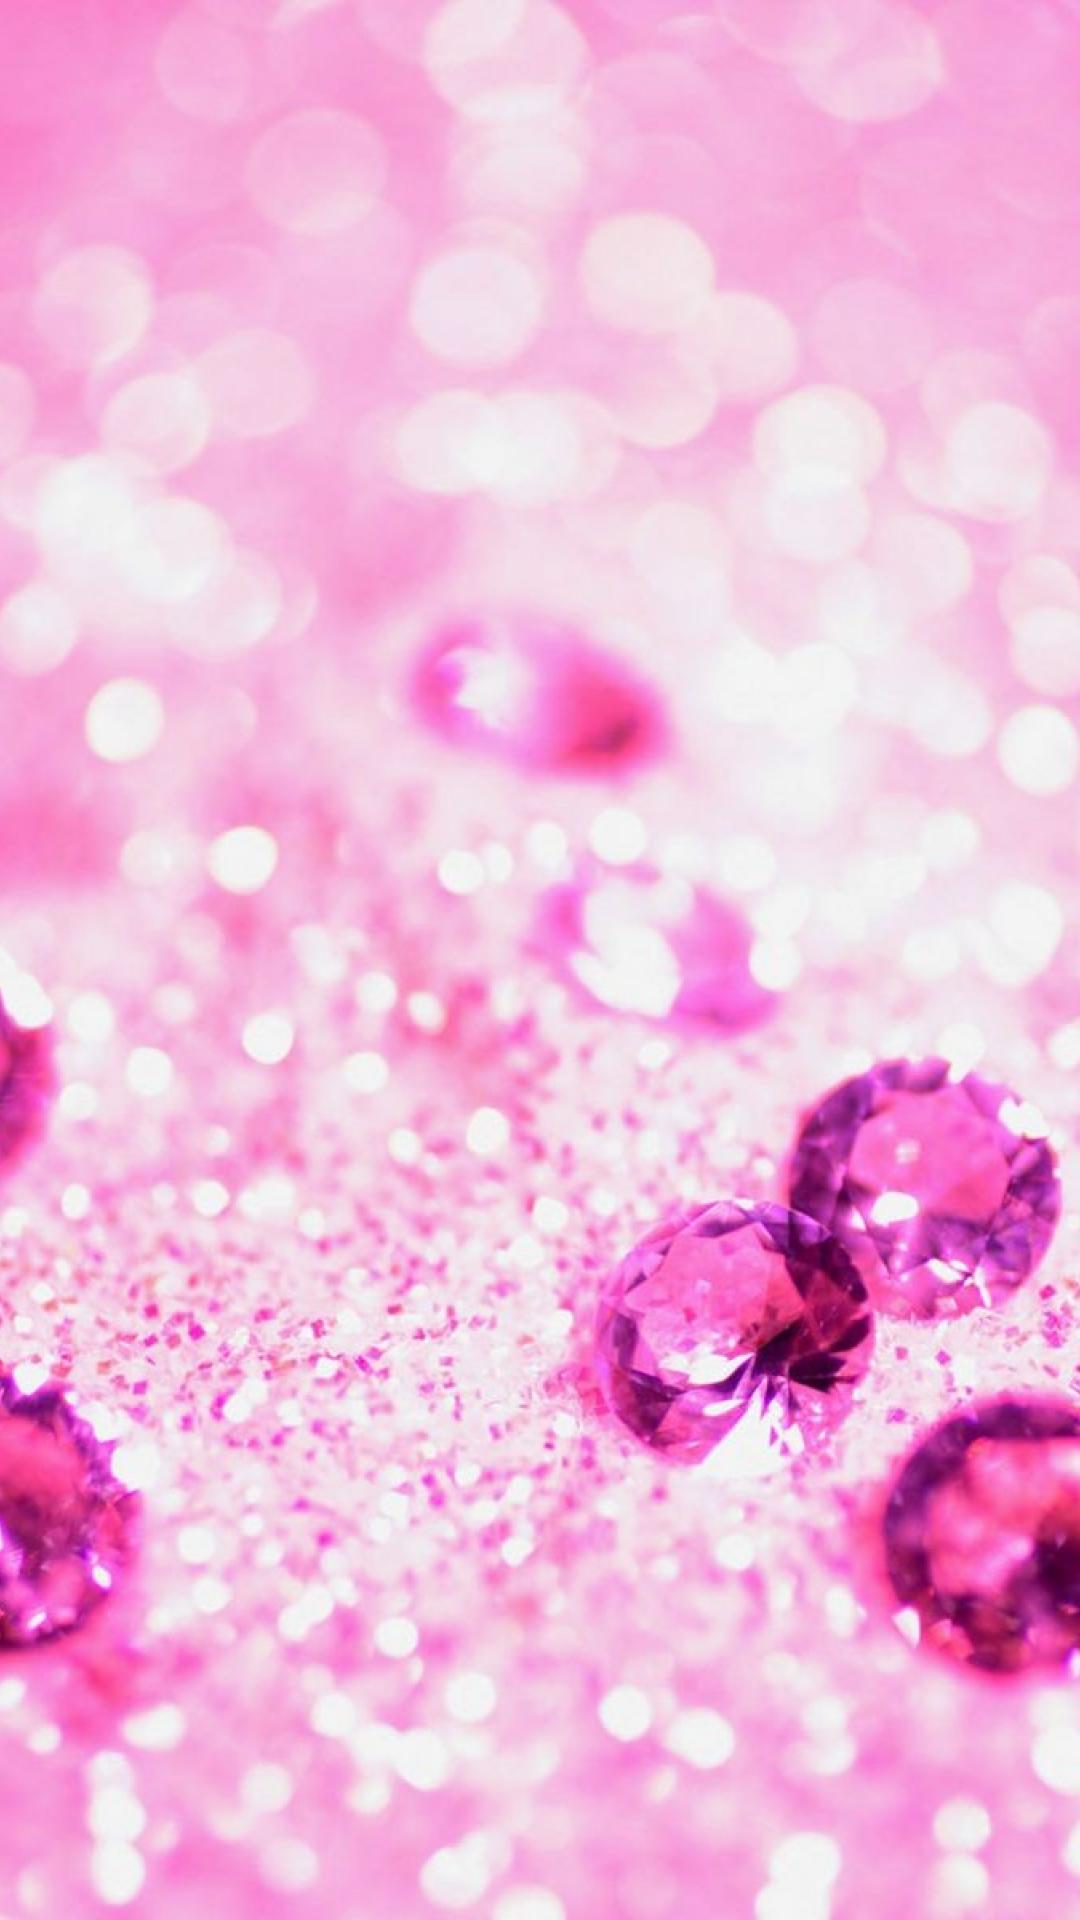 Un montón de joyas de color rosa | Fondos de iPhone de brillo femenino | iPhone